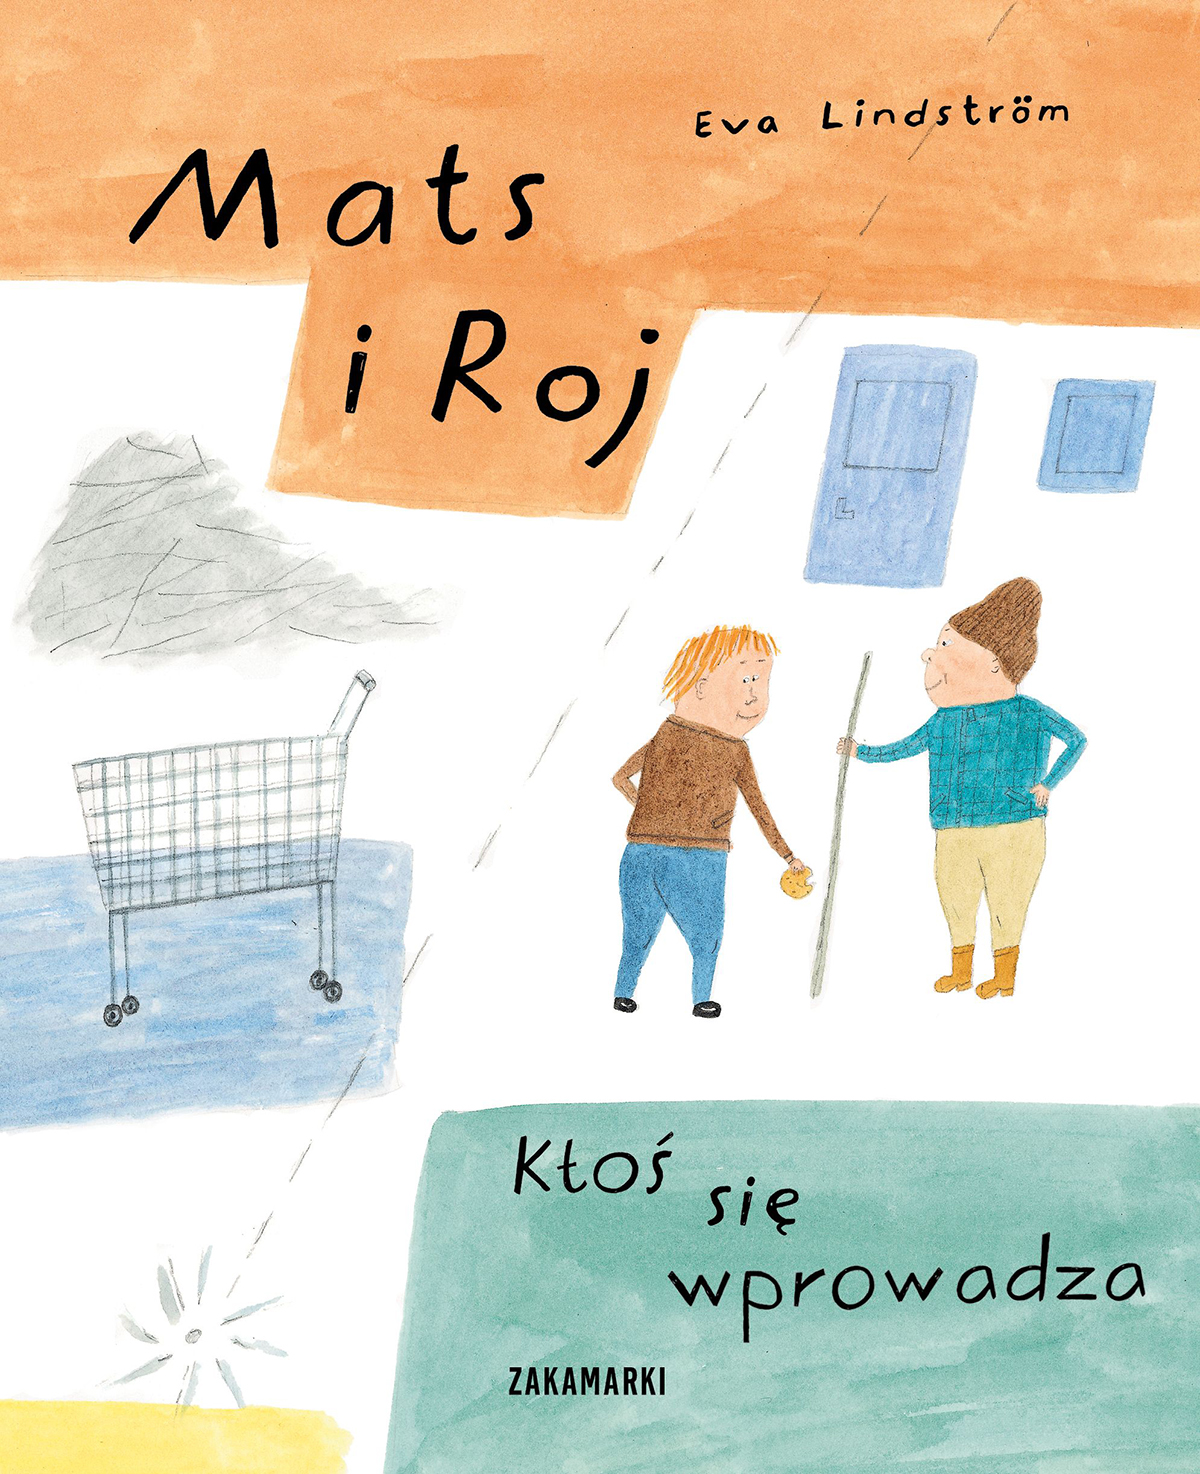 Plakat imitujący dziecięcy rysunek wykonany kredkami przedstawia dwie postaci, męską i żeńską, obok stoi koszyk na zakupy.